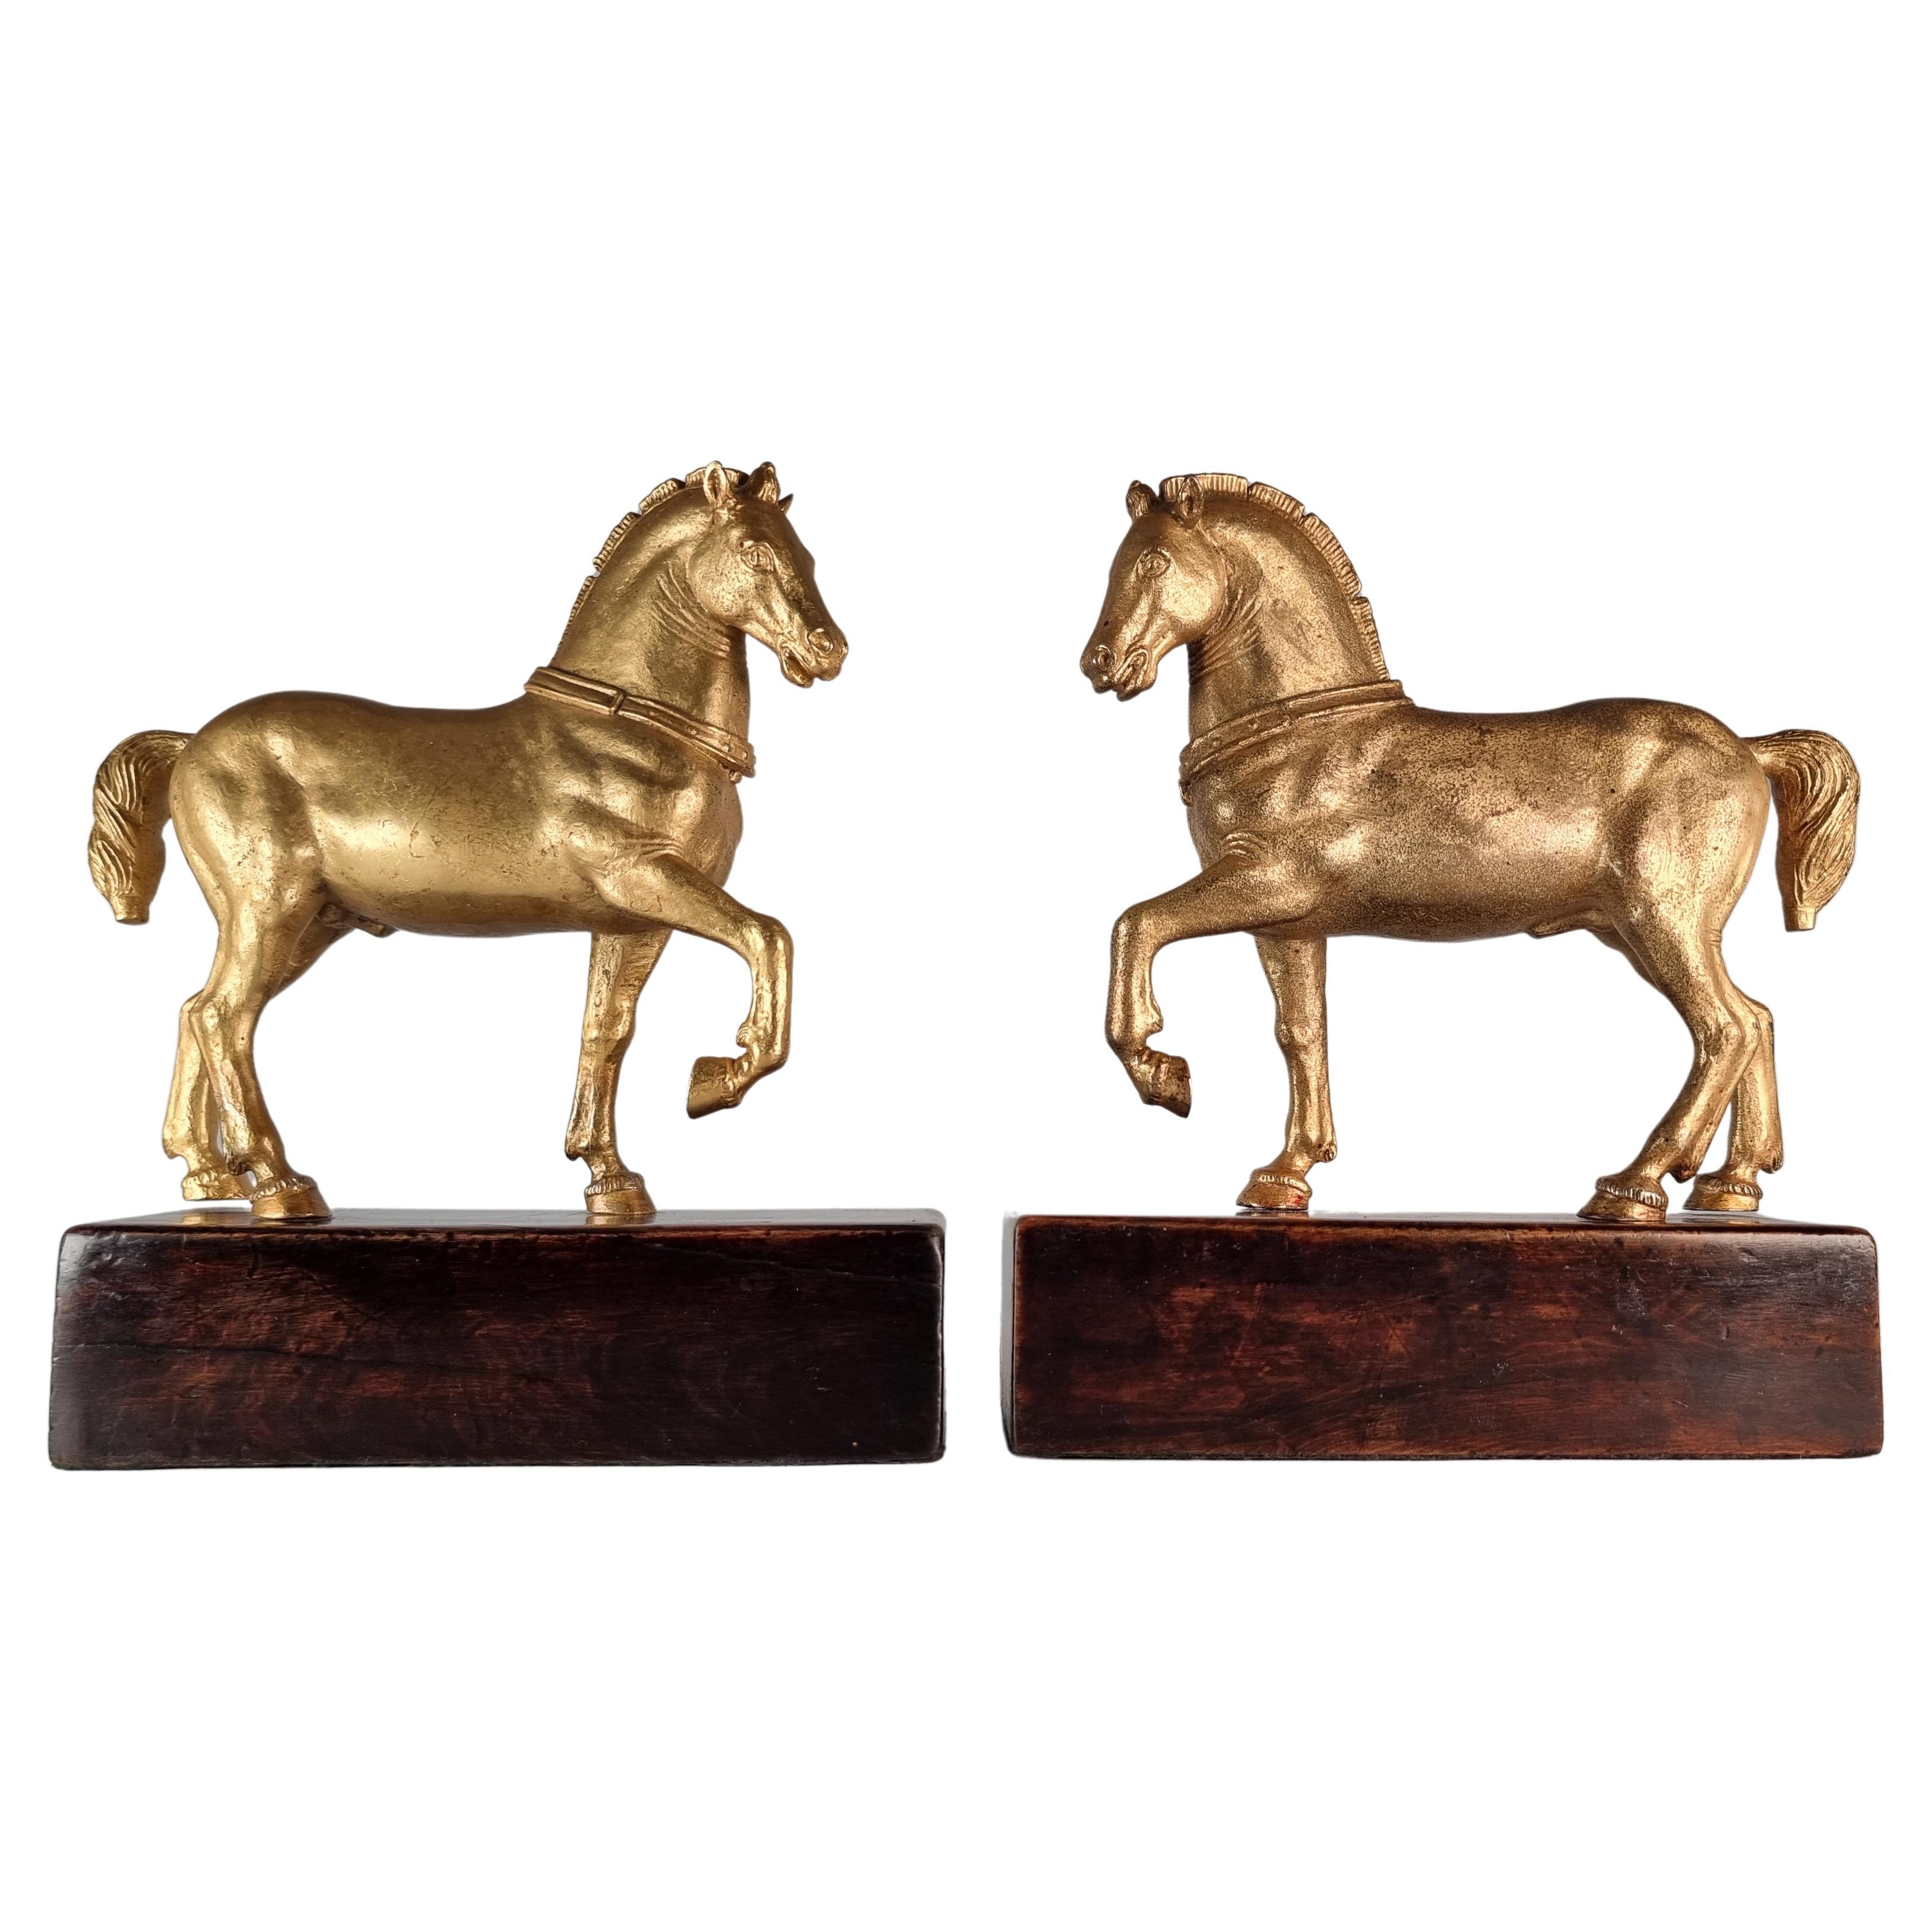 A rare pair of Grand Tour gilt bronze horses of Saint Mark Venice, circa 1900